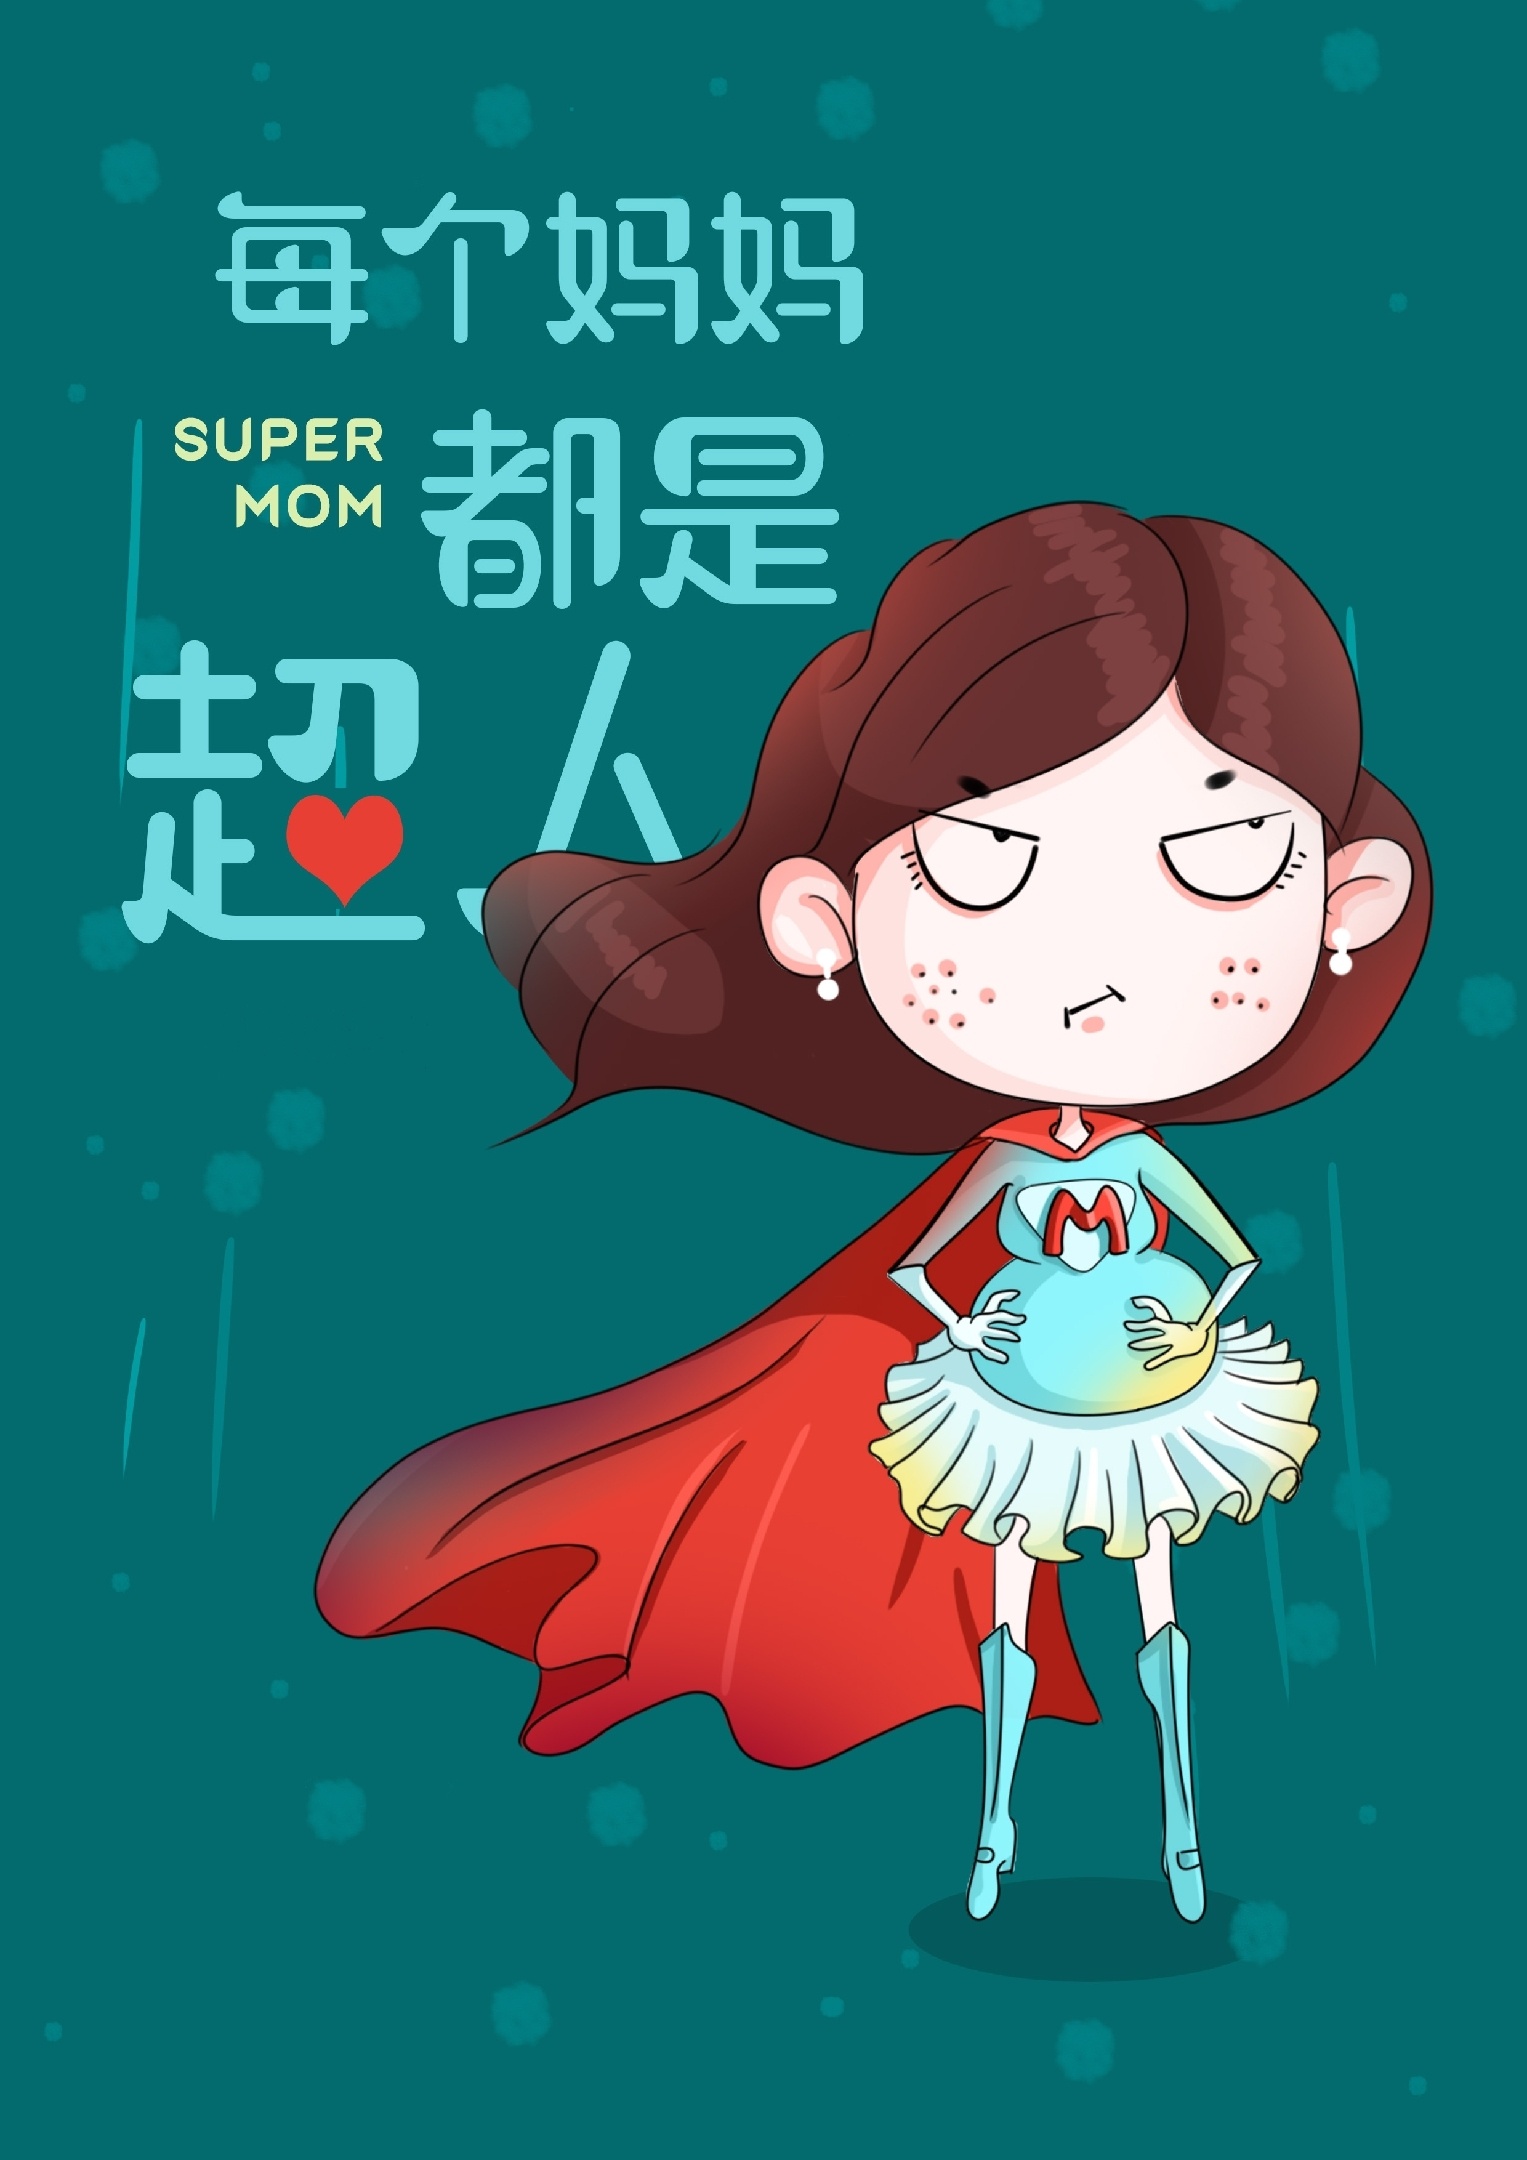 我的女友是超人：徒手举起一颗星球 #女友 #超人 #女超人_哔哩哔哩bilibili